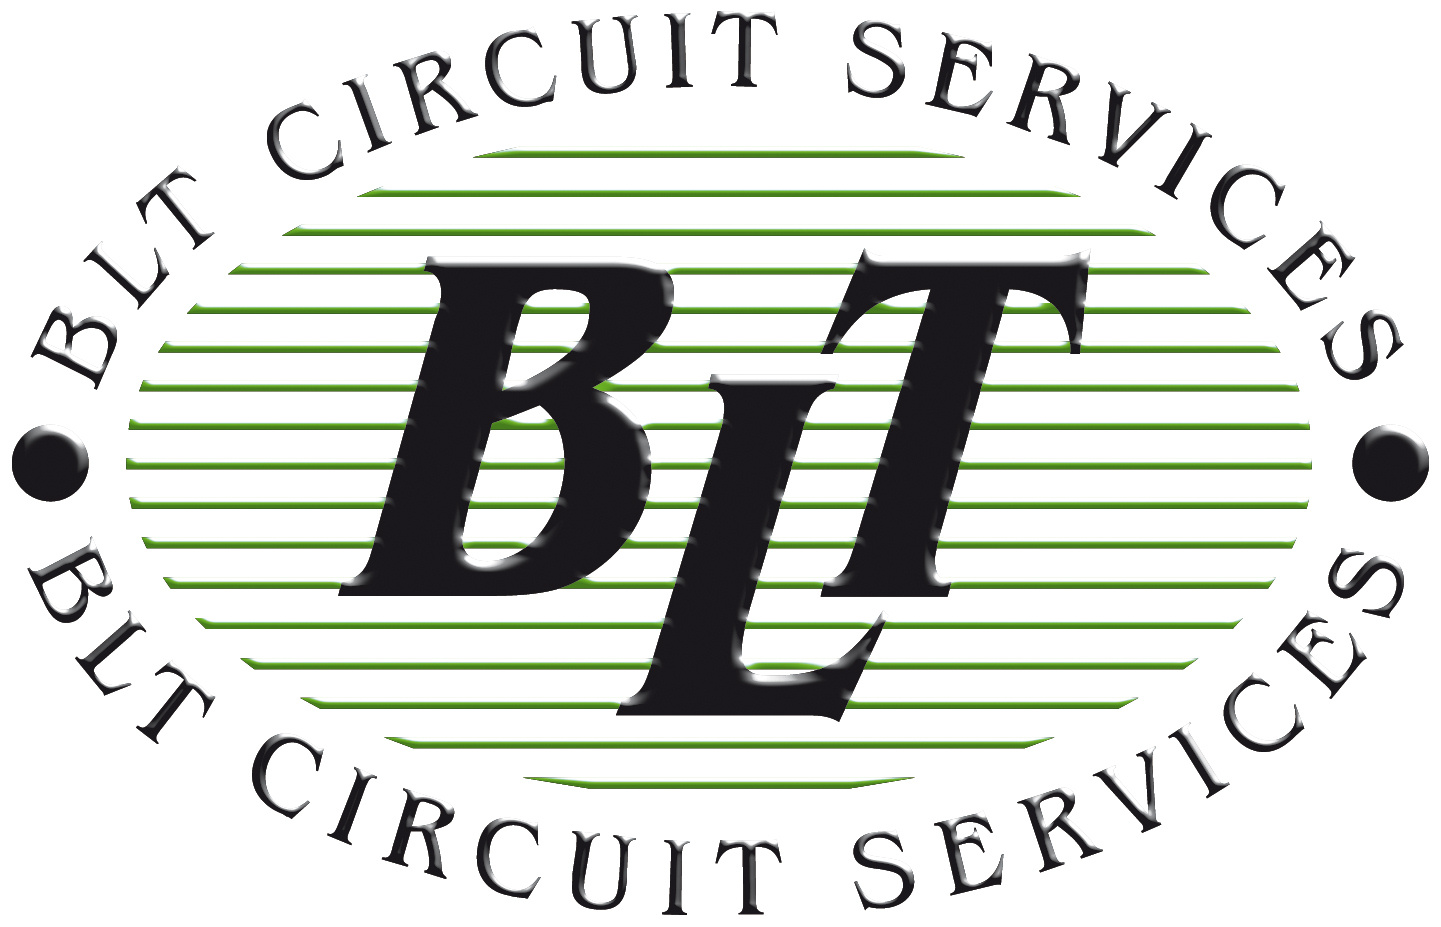 BLT circuit services ltd